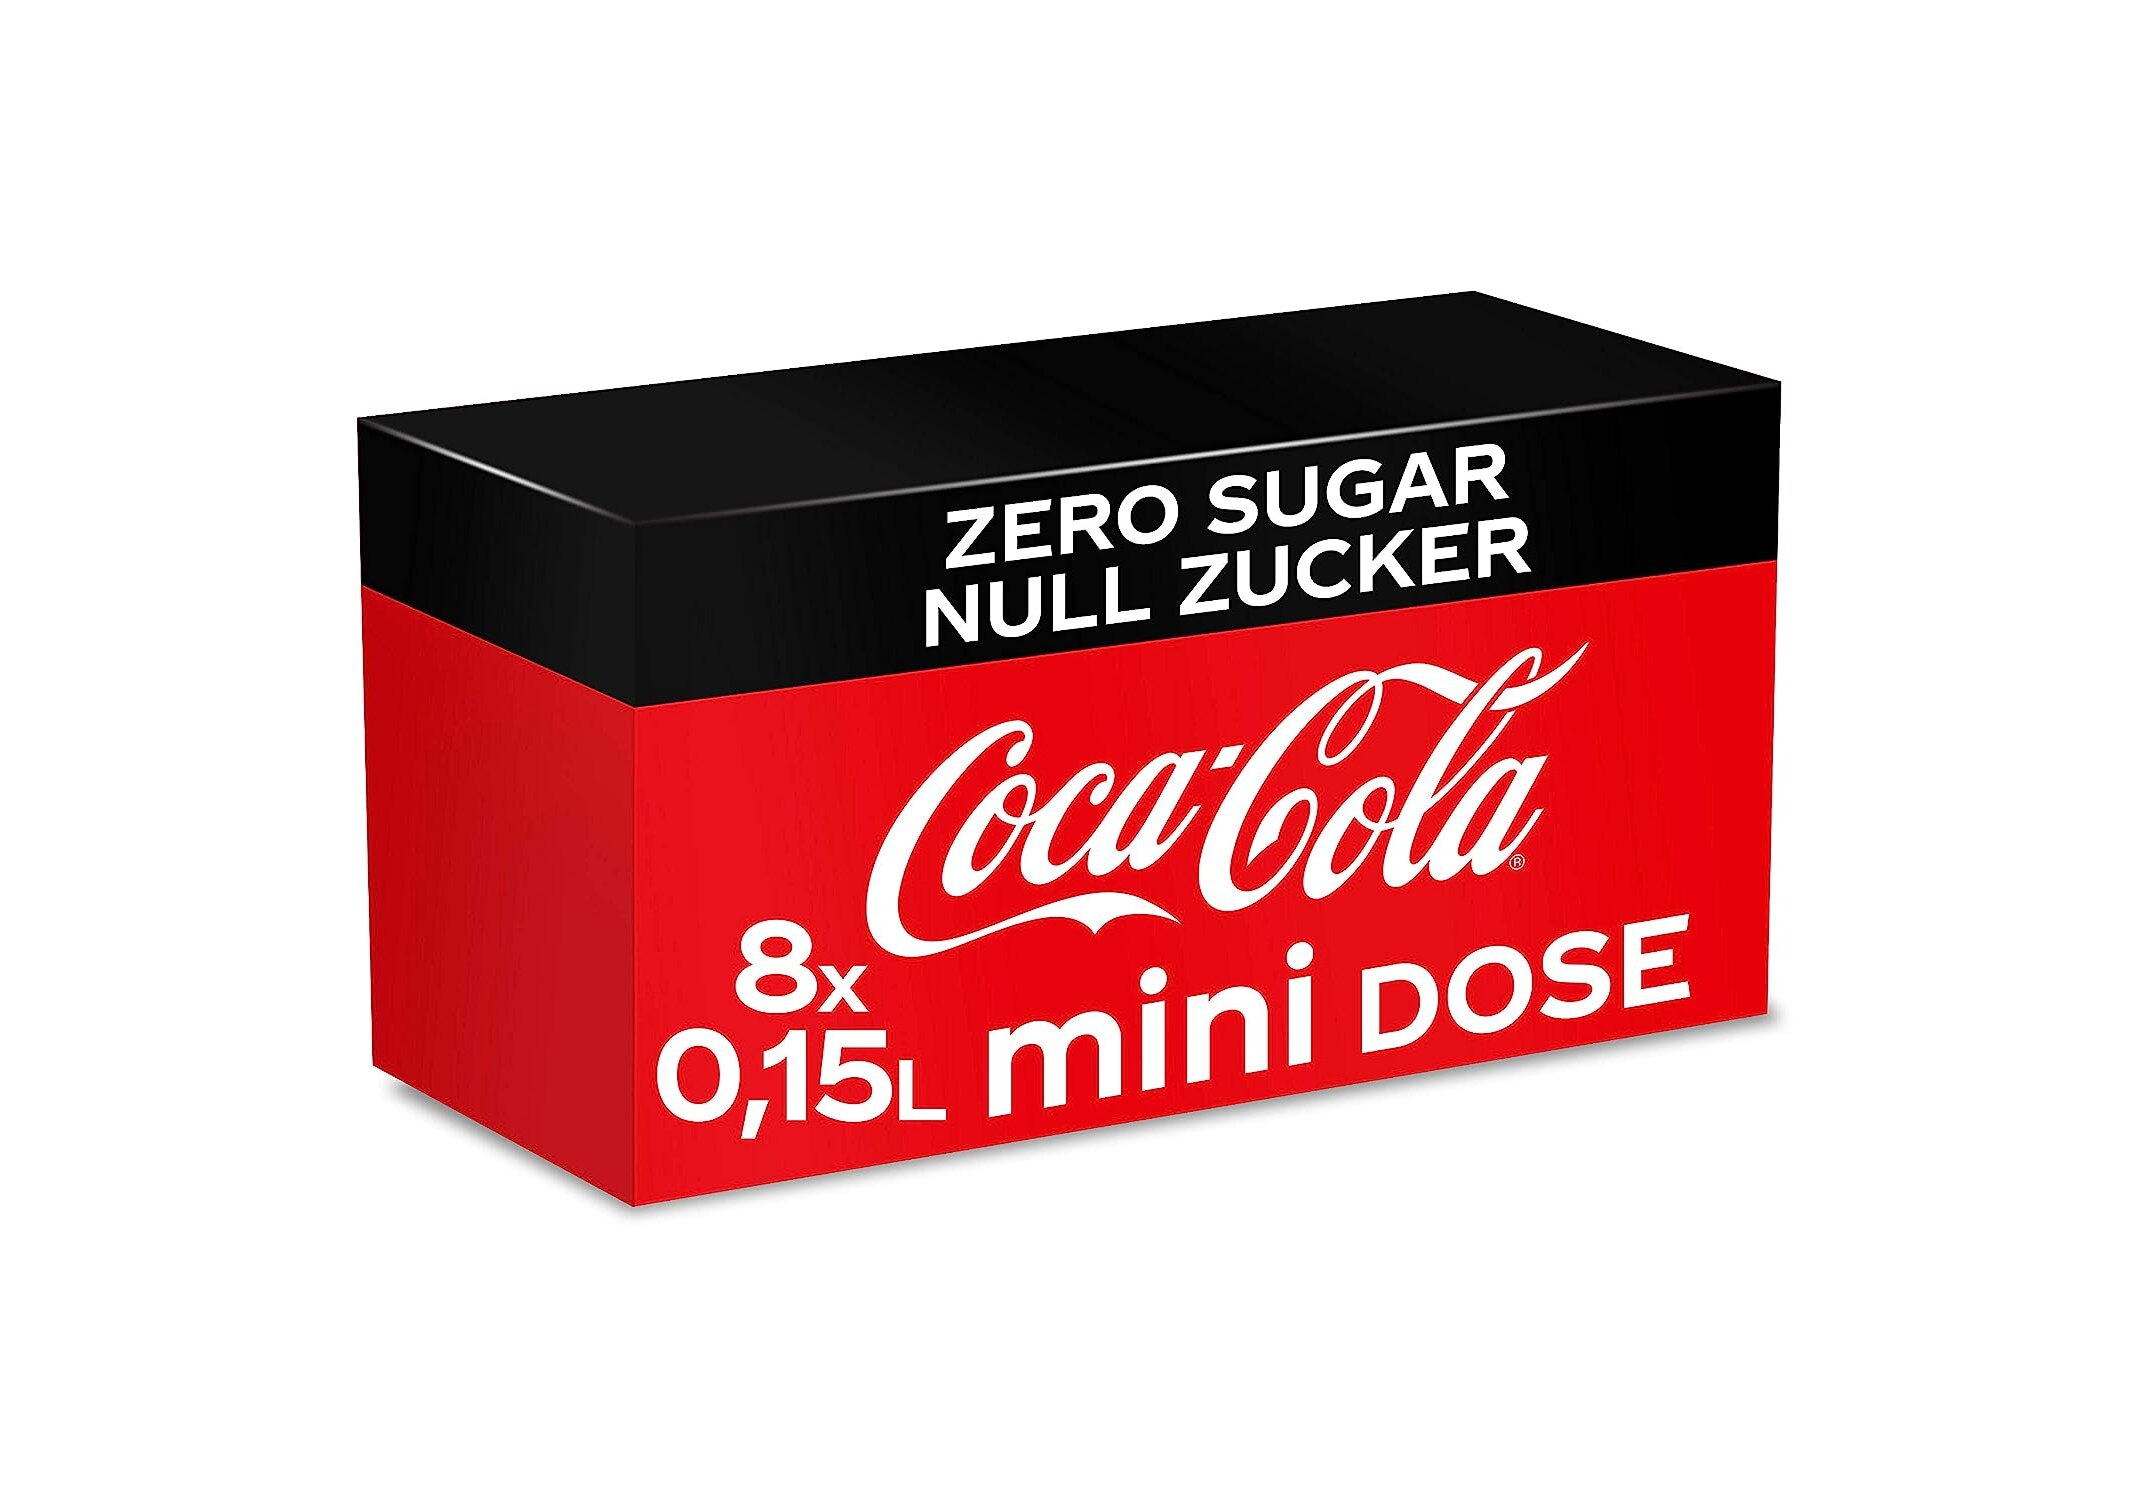 Lebensmittel & Getränke///Getränke :: Kaffee & Tee :: Cola & Limonade ::  Cola :: Coca-Cola Zero Sugar, Koffeinhaltiges Erfrischungsgetränk in  stylischen Mini Dosen mit originalem Geschmack, EINWEG Dose (3 x 8 x